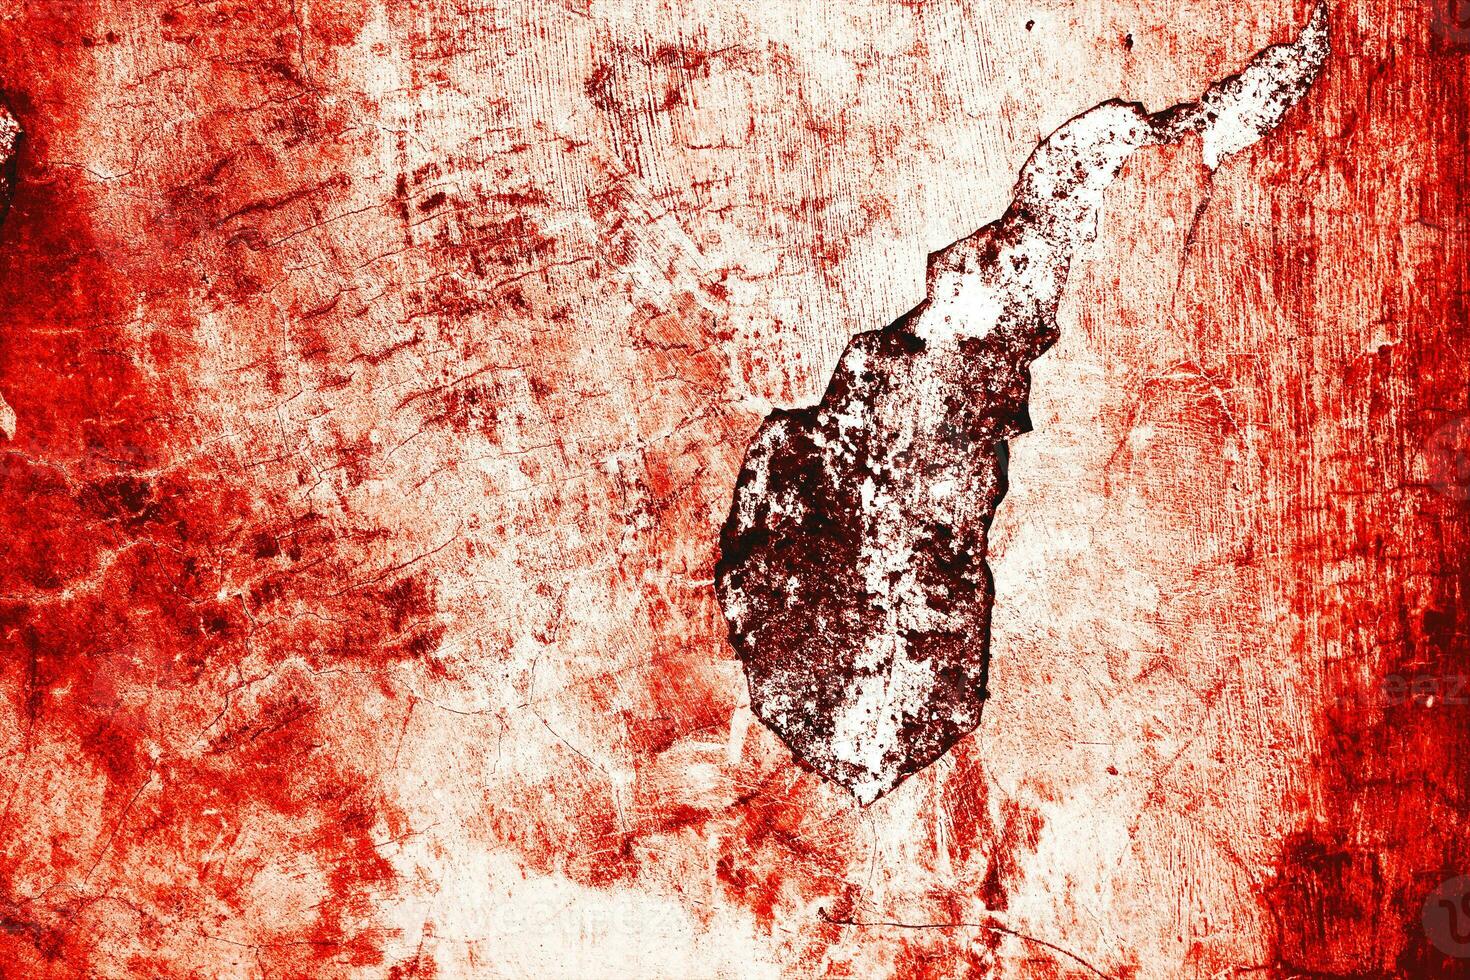 oscuro rojo sangre en antiguo pared para Víspera de Todos los Santos concepto foto